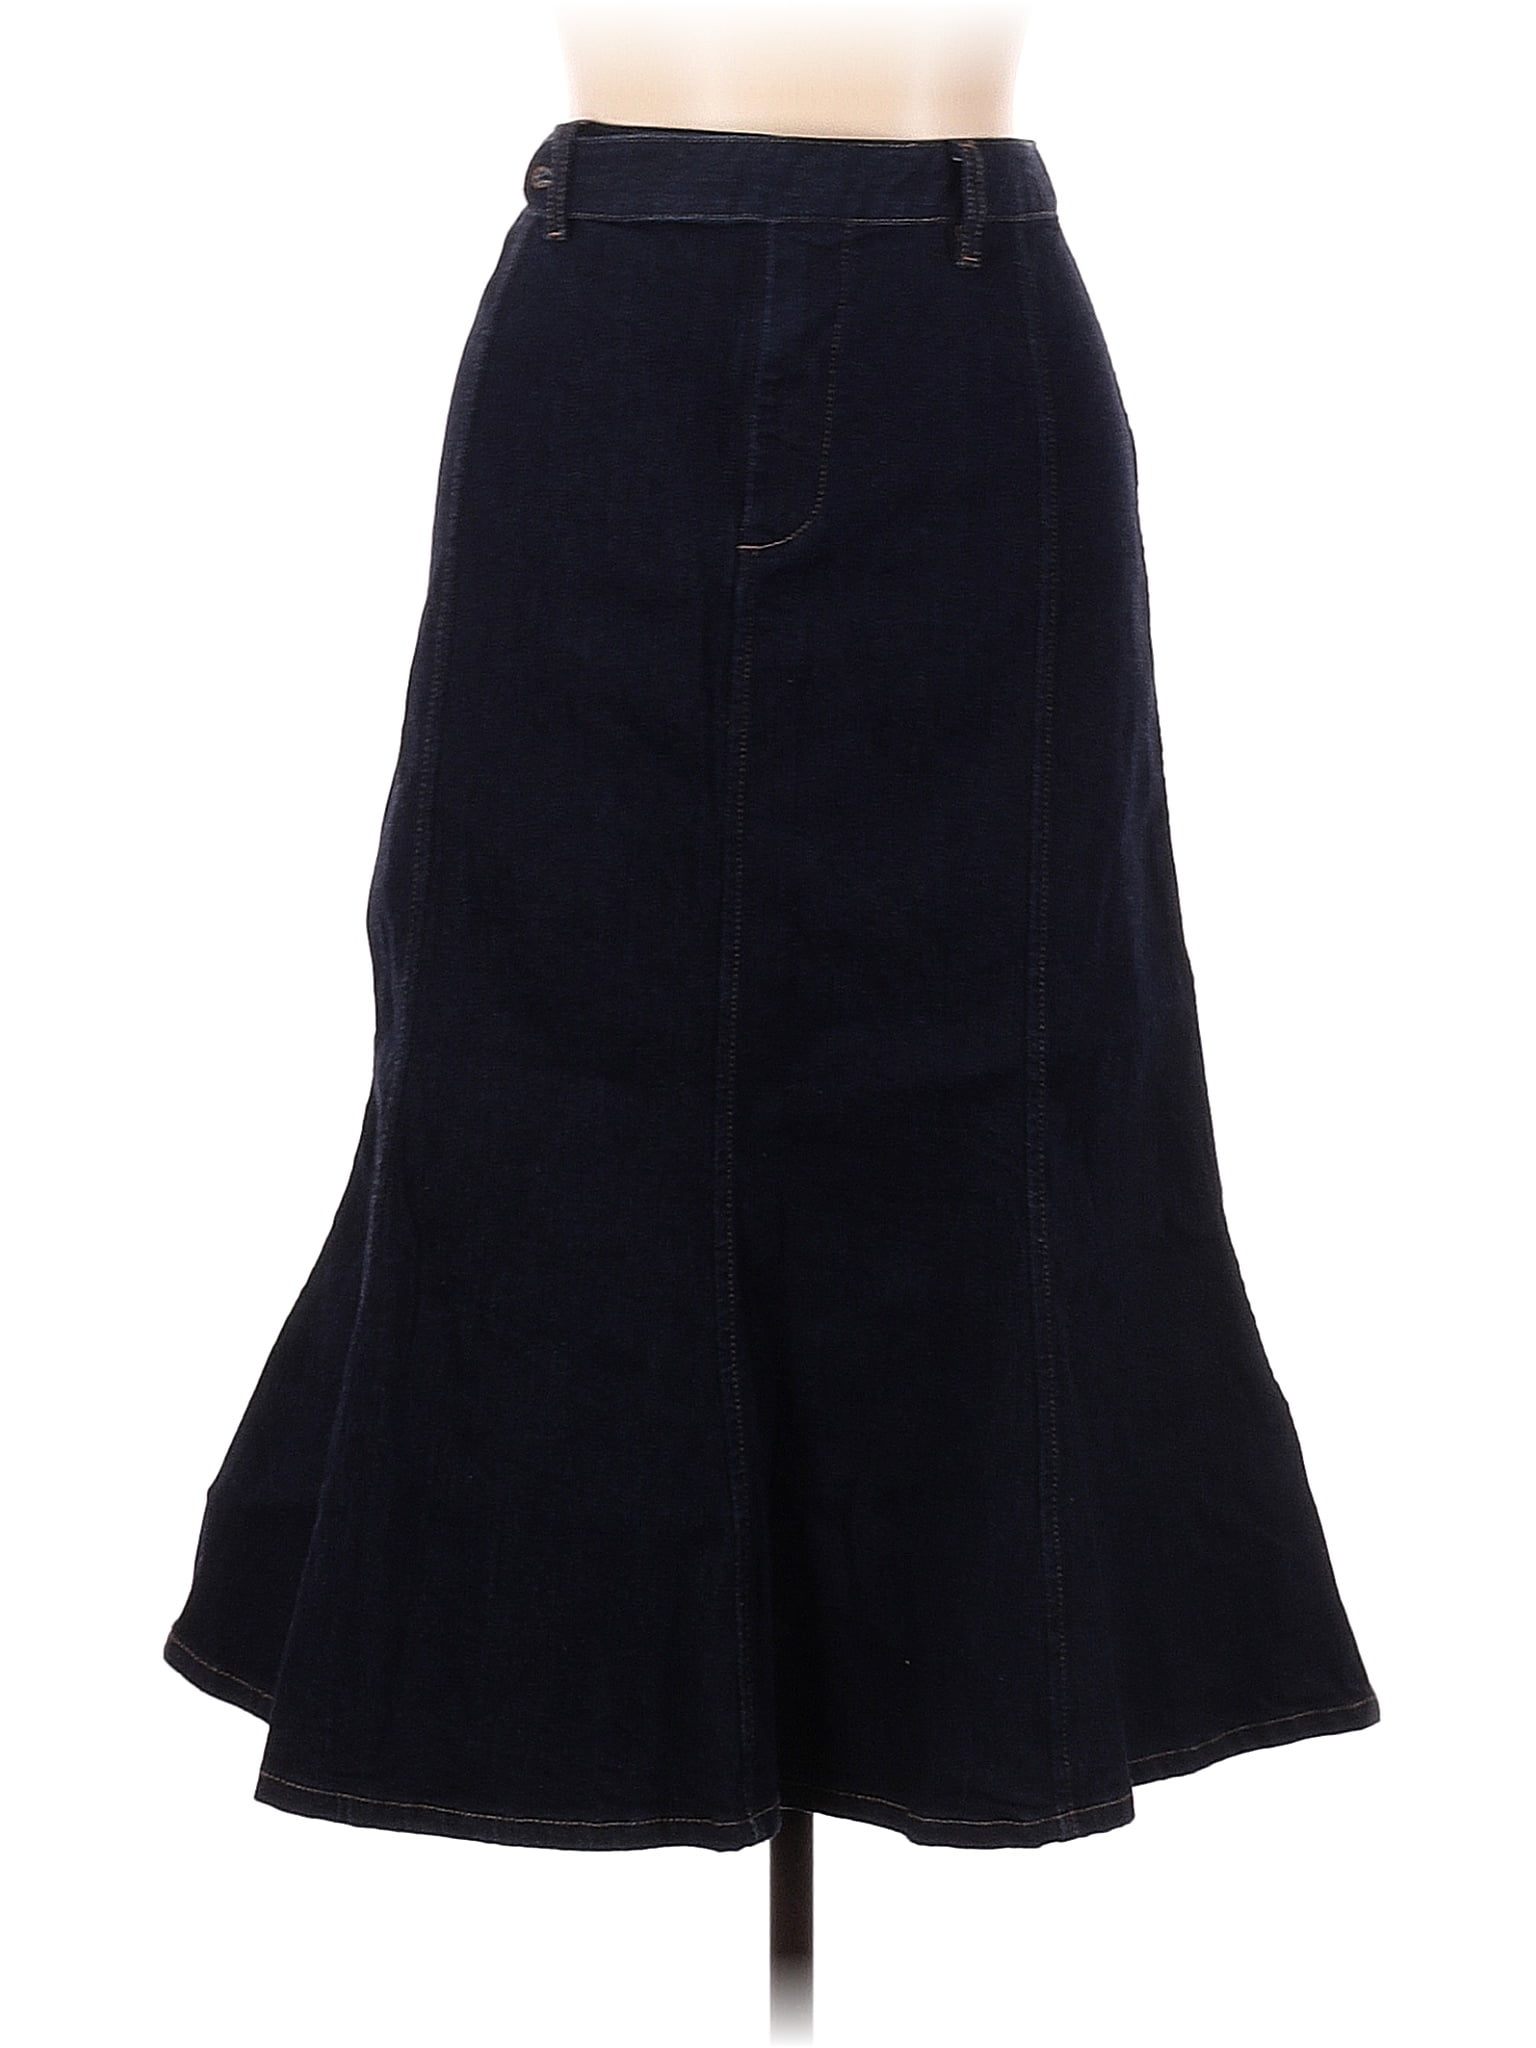 Lauren Jeans Co. Solid Blue Denim Skirt Size 12 - 63% off | ThredUp